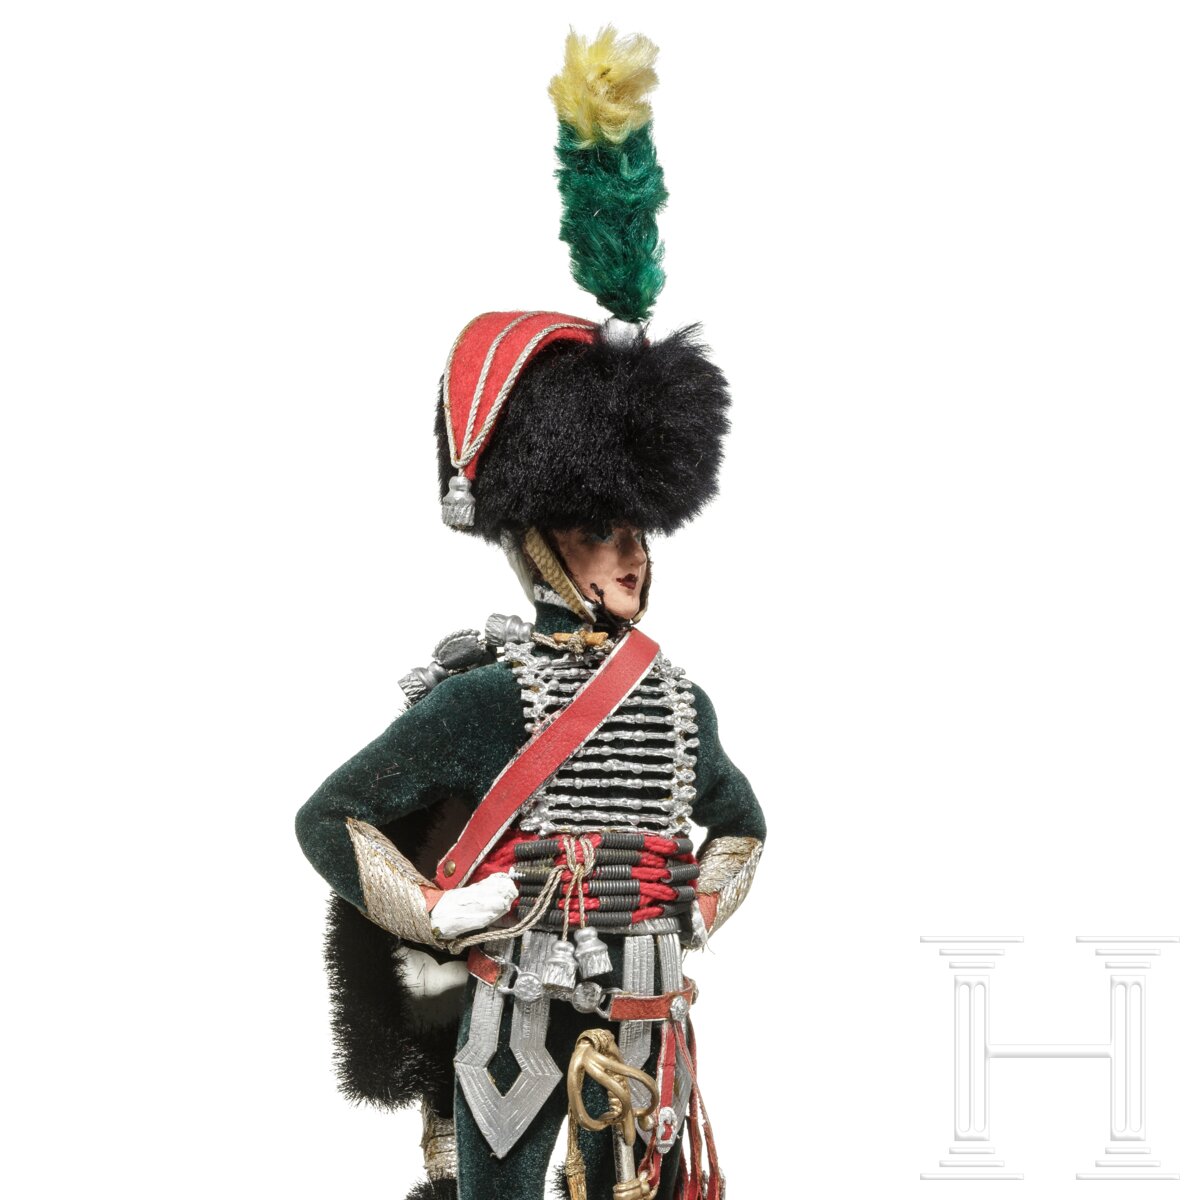 Offizier der Gardes d'honneur um 1810 - Uniformfigur von Marcel Riffet, 20. Jhdt. - Image 6 of 6